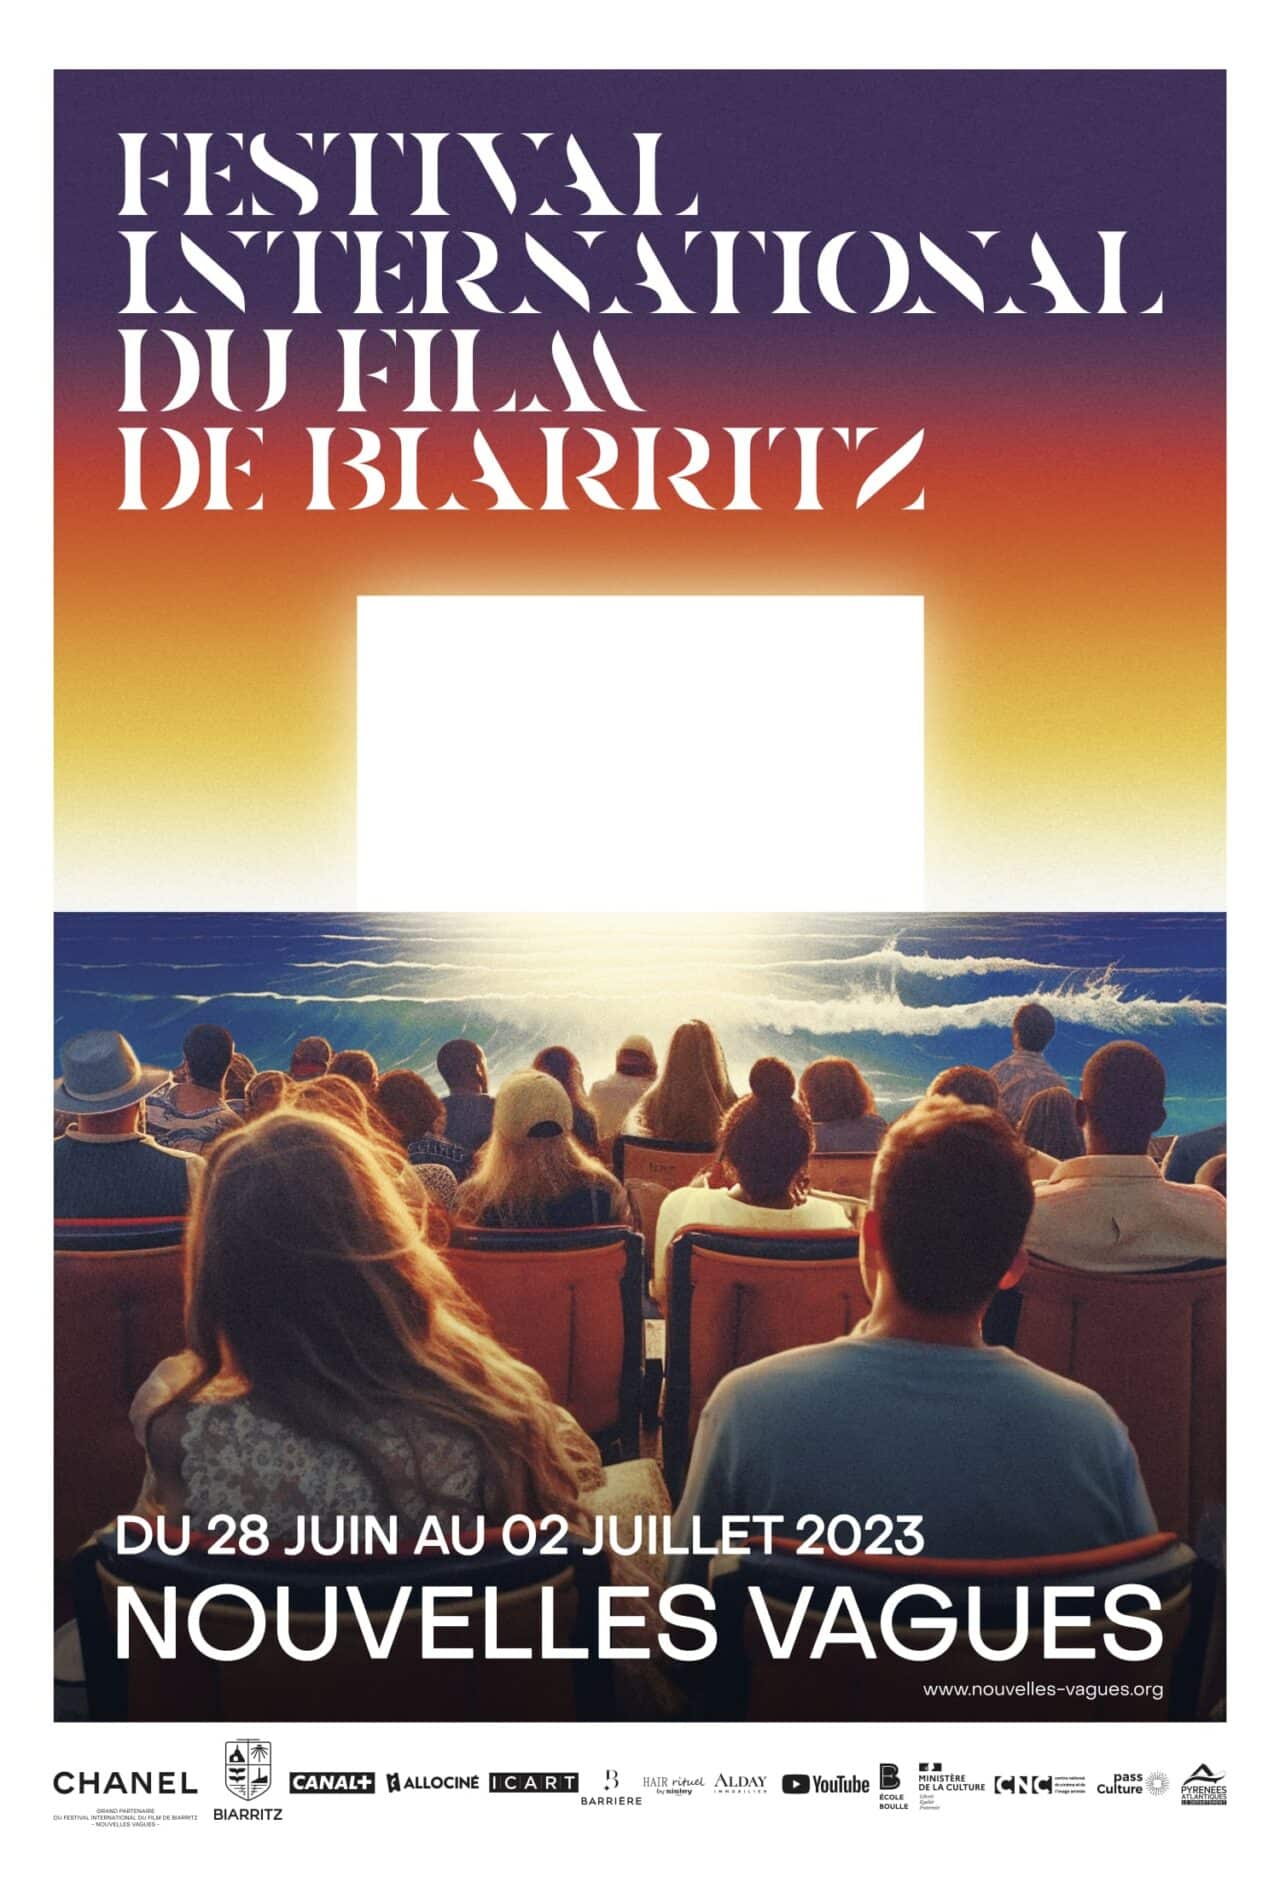 CHANEL, Grand Partenaire du Festival International du Film de Biarritz